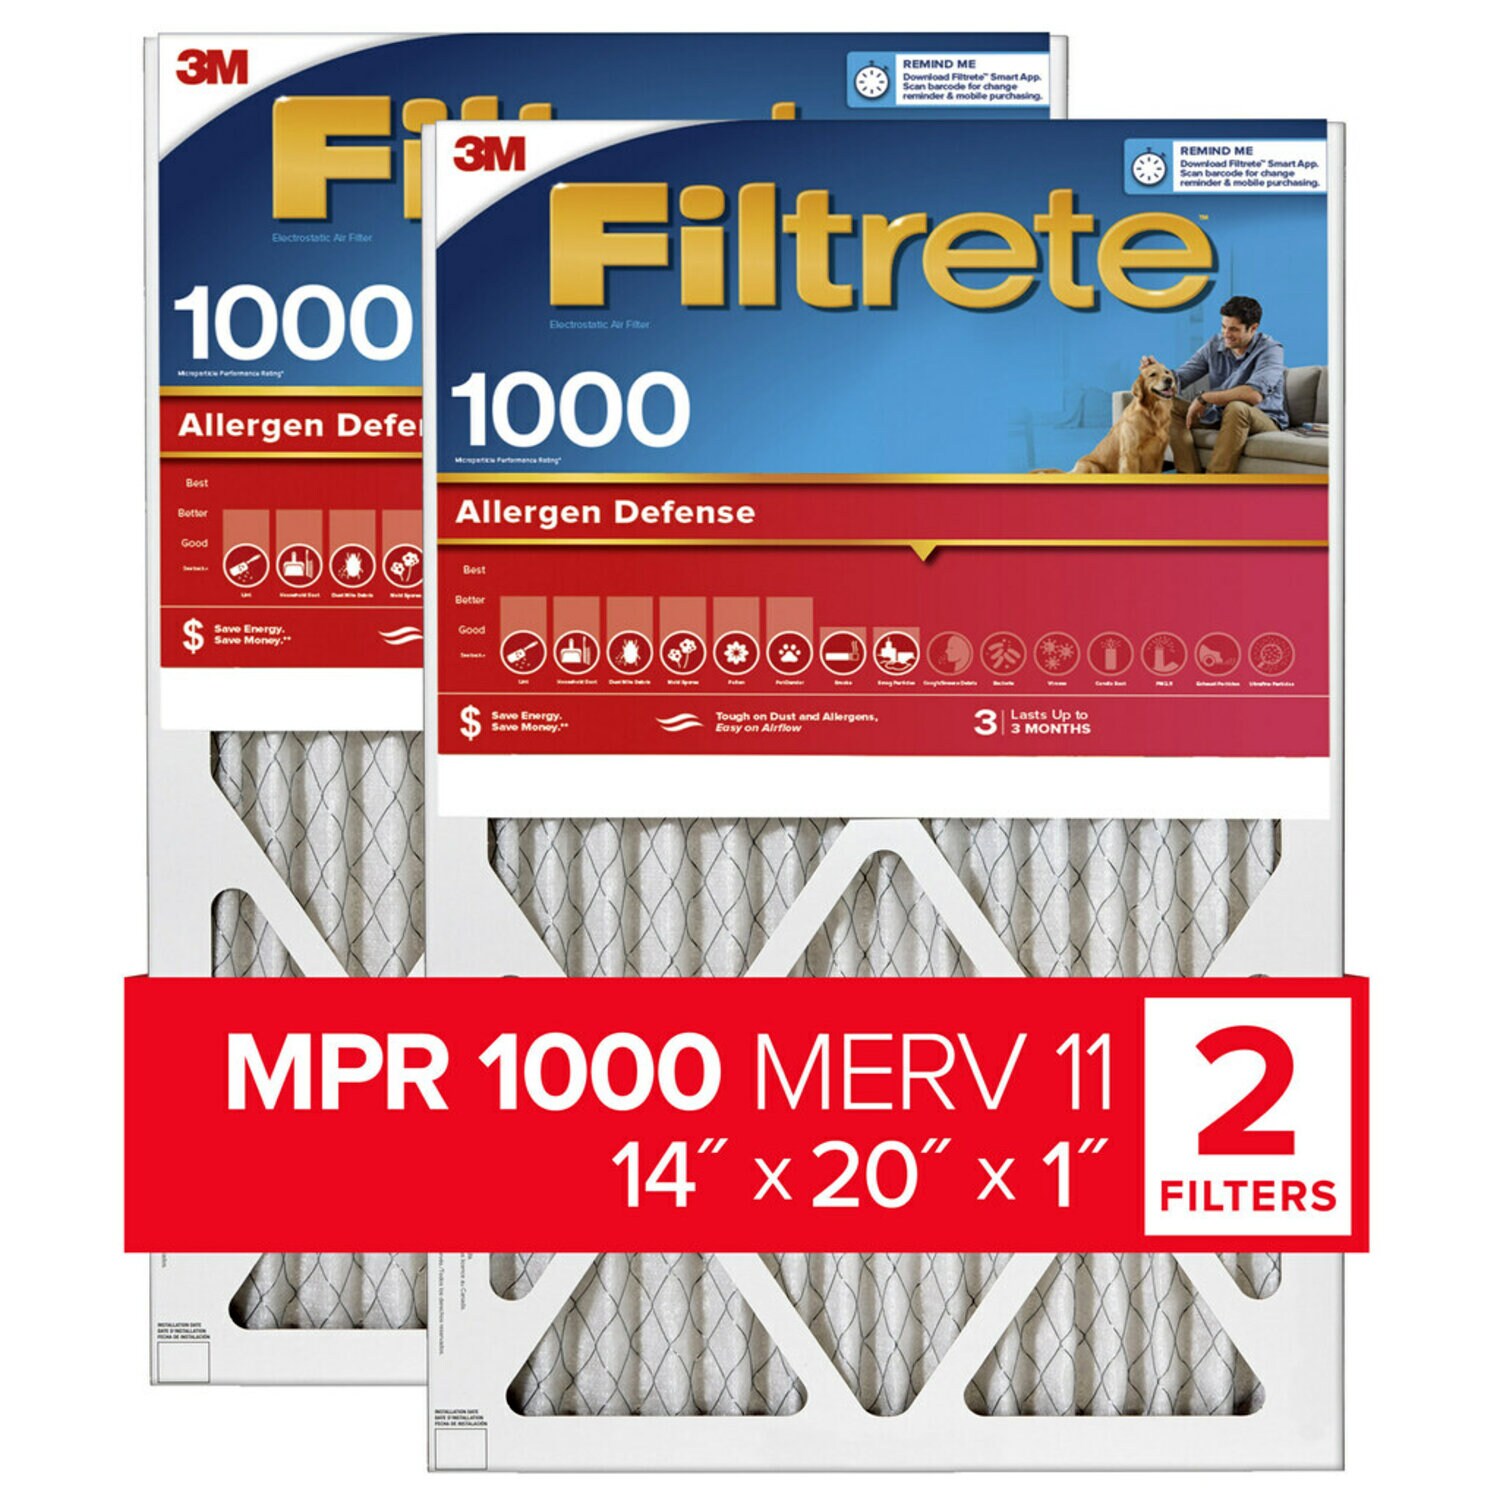 7100188263 - Filtrete Allergen Defense Air Filter, 1000 MPR, 9805-2PK-HDW, 14 in x
20 in x 1 in (35,5 cm x 50,8 cm x 2,5 cm)